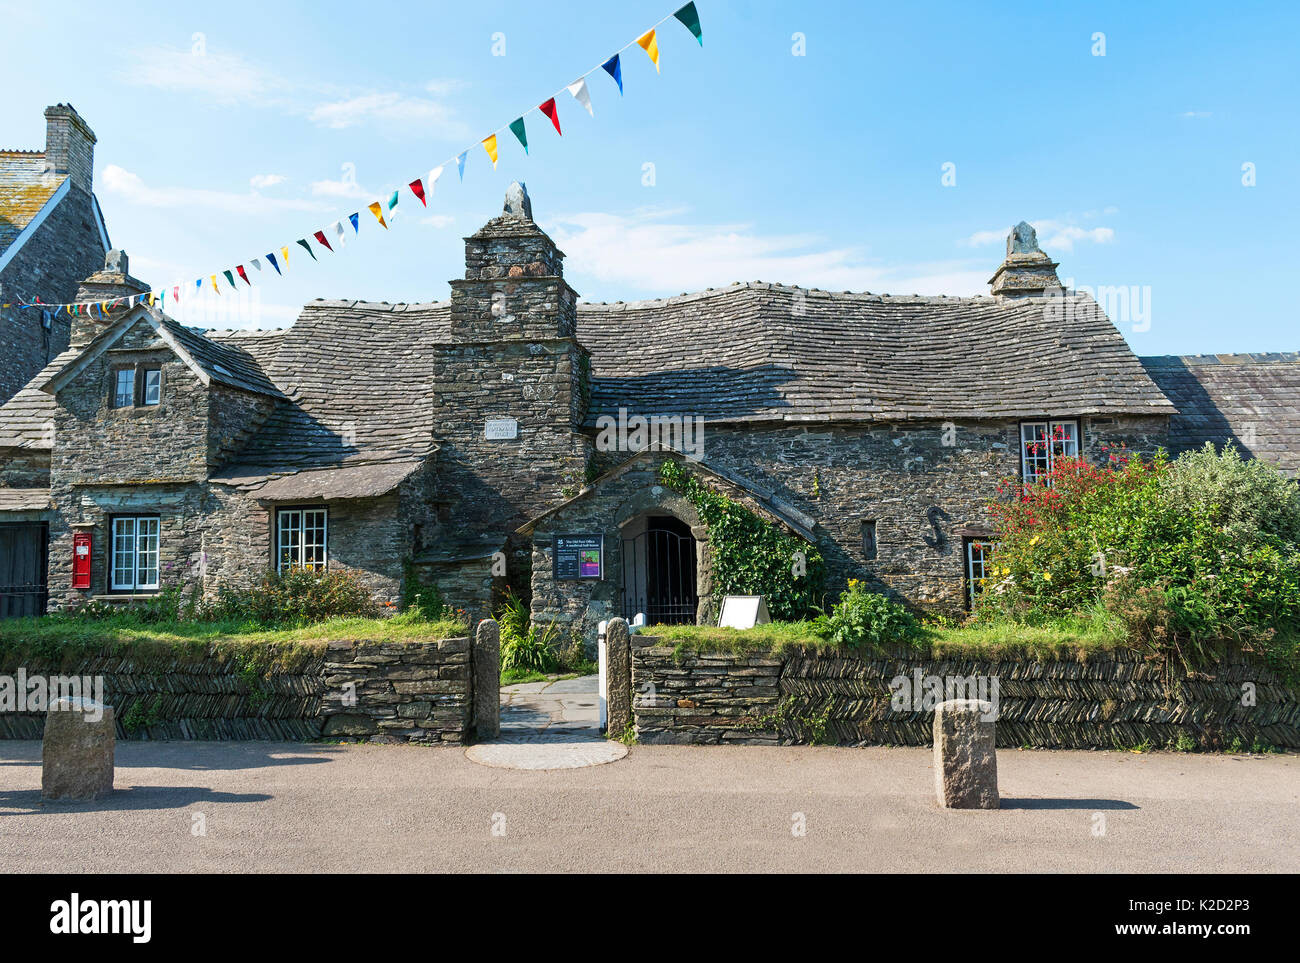 Die Alte Post, Gebäude aus dem 14. Jahrhundert in Tintagel, Cornwall, England, Großbritannien, Großbritannien, Stockfoto